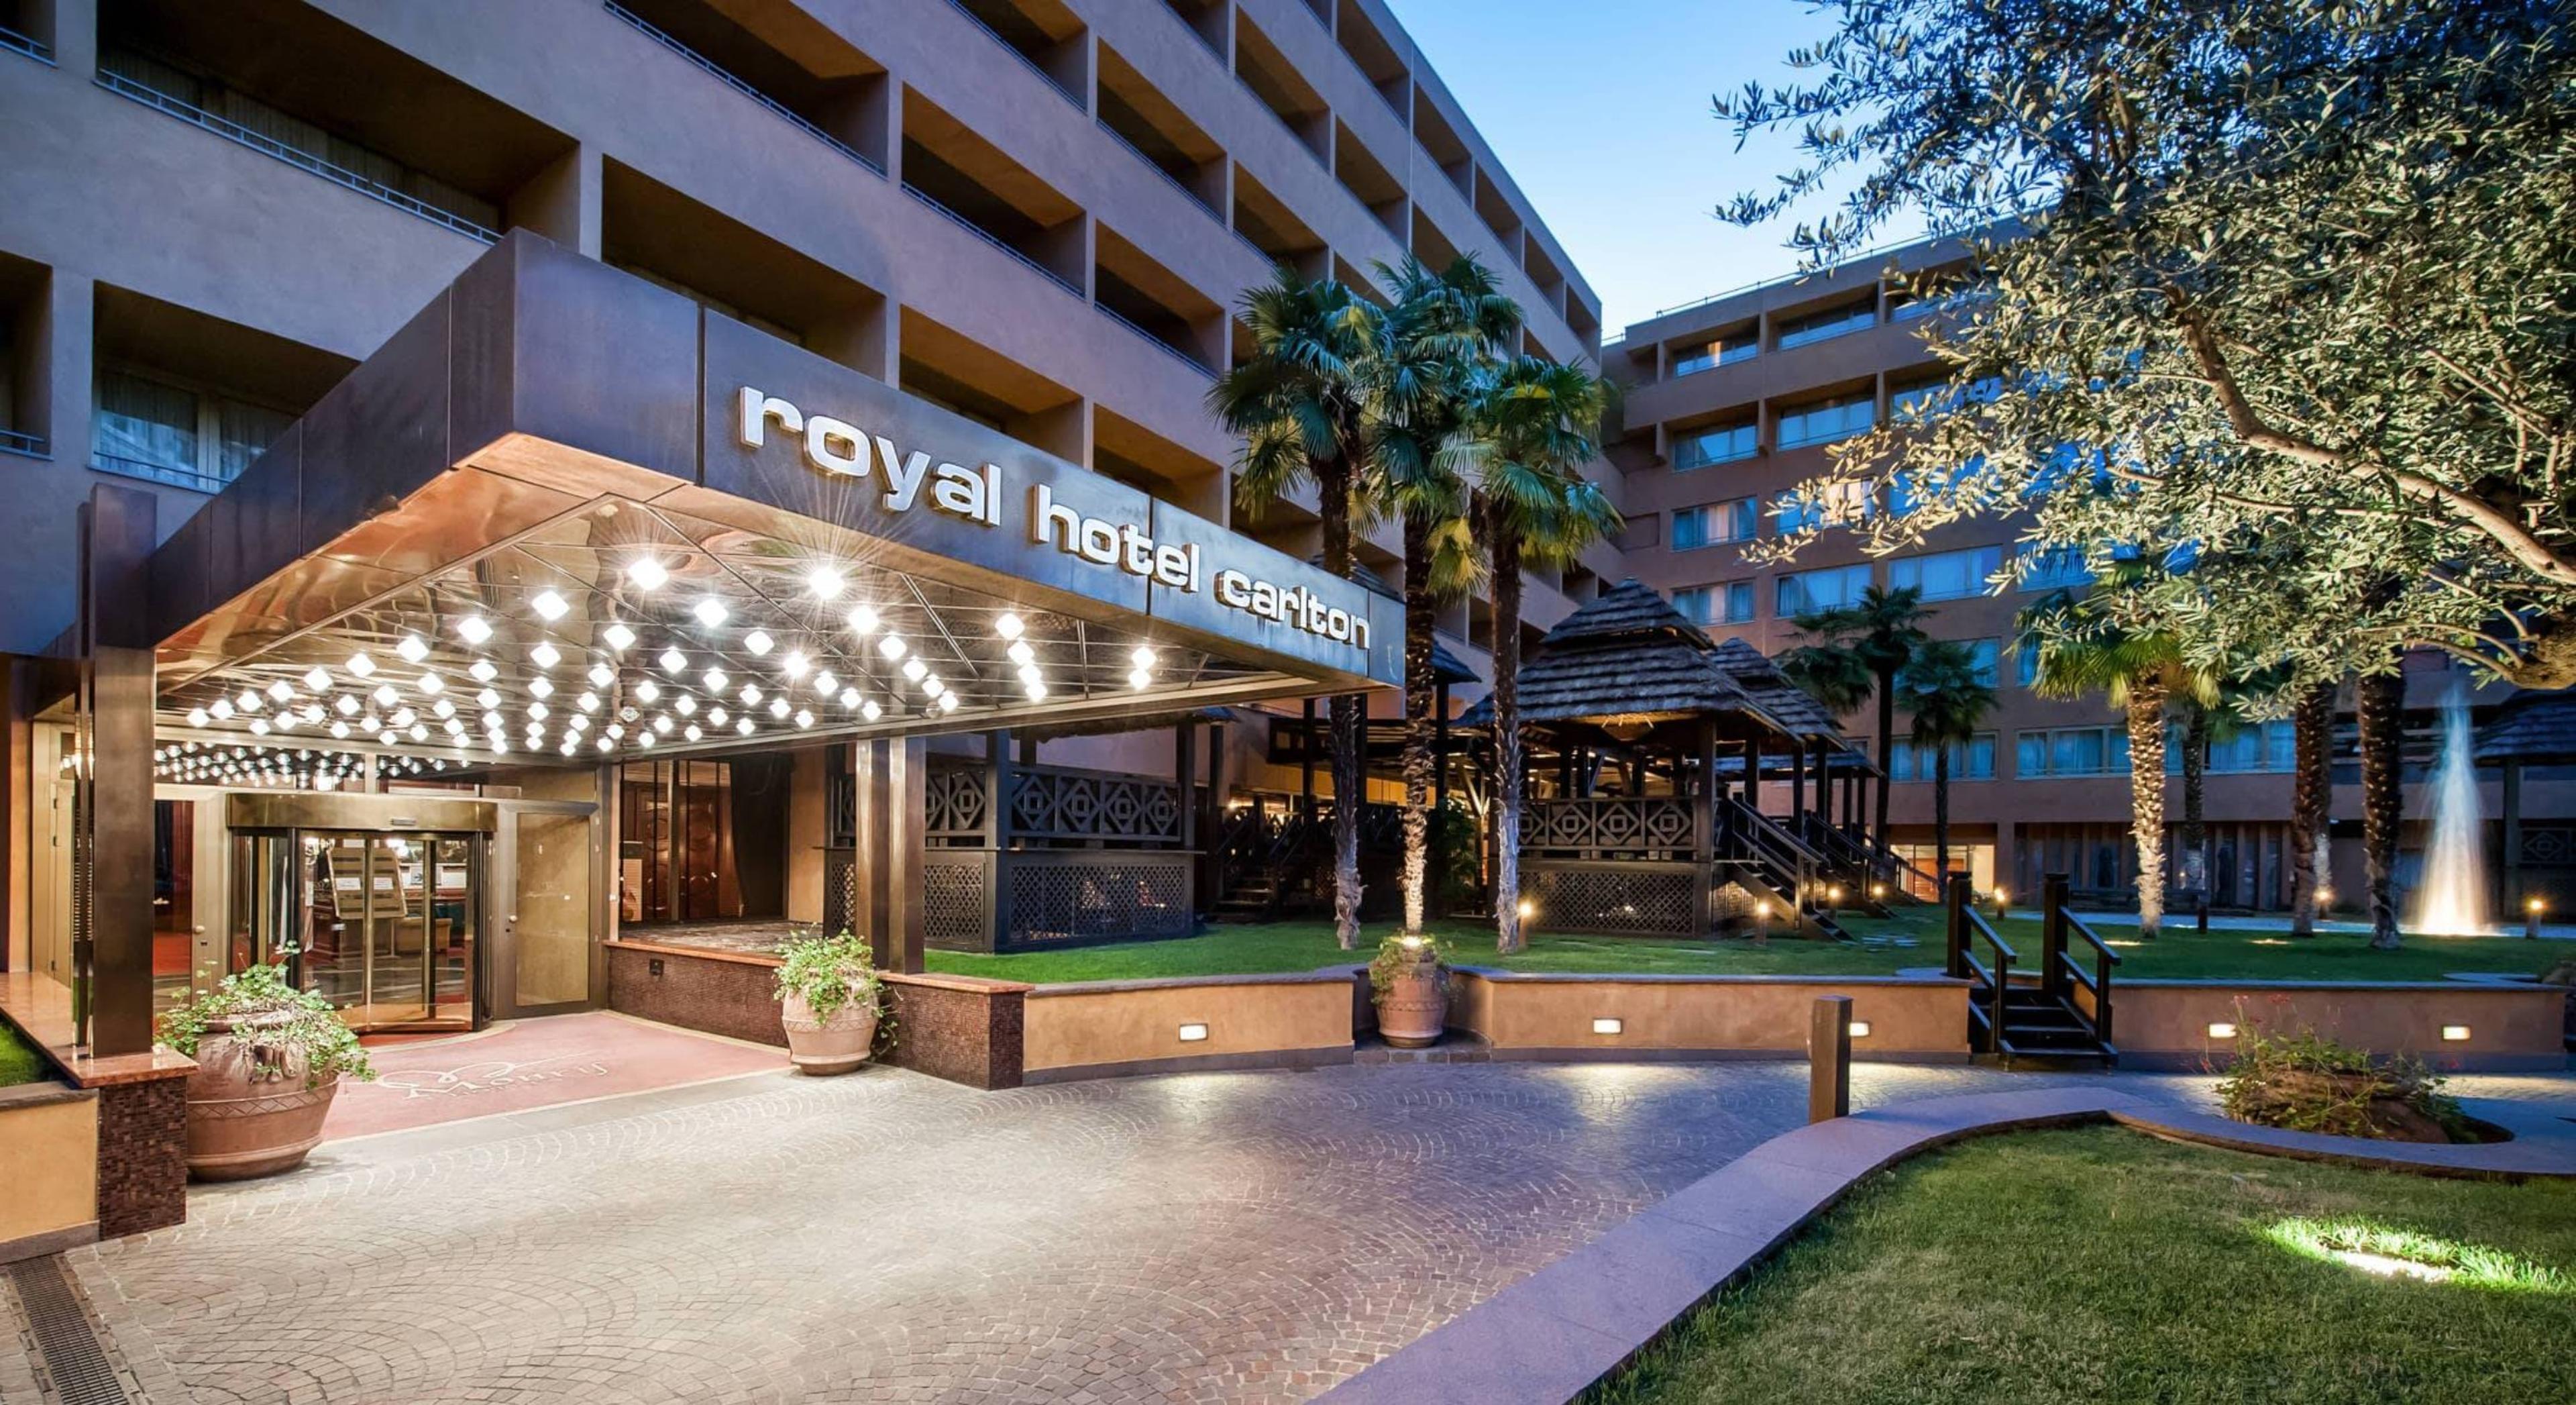 Royal Hotel Carlton